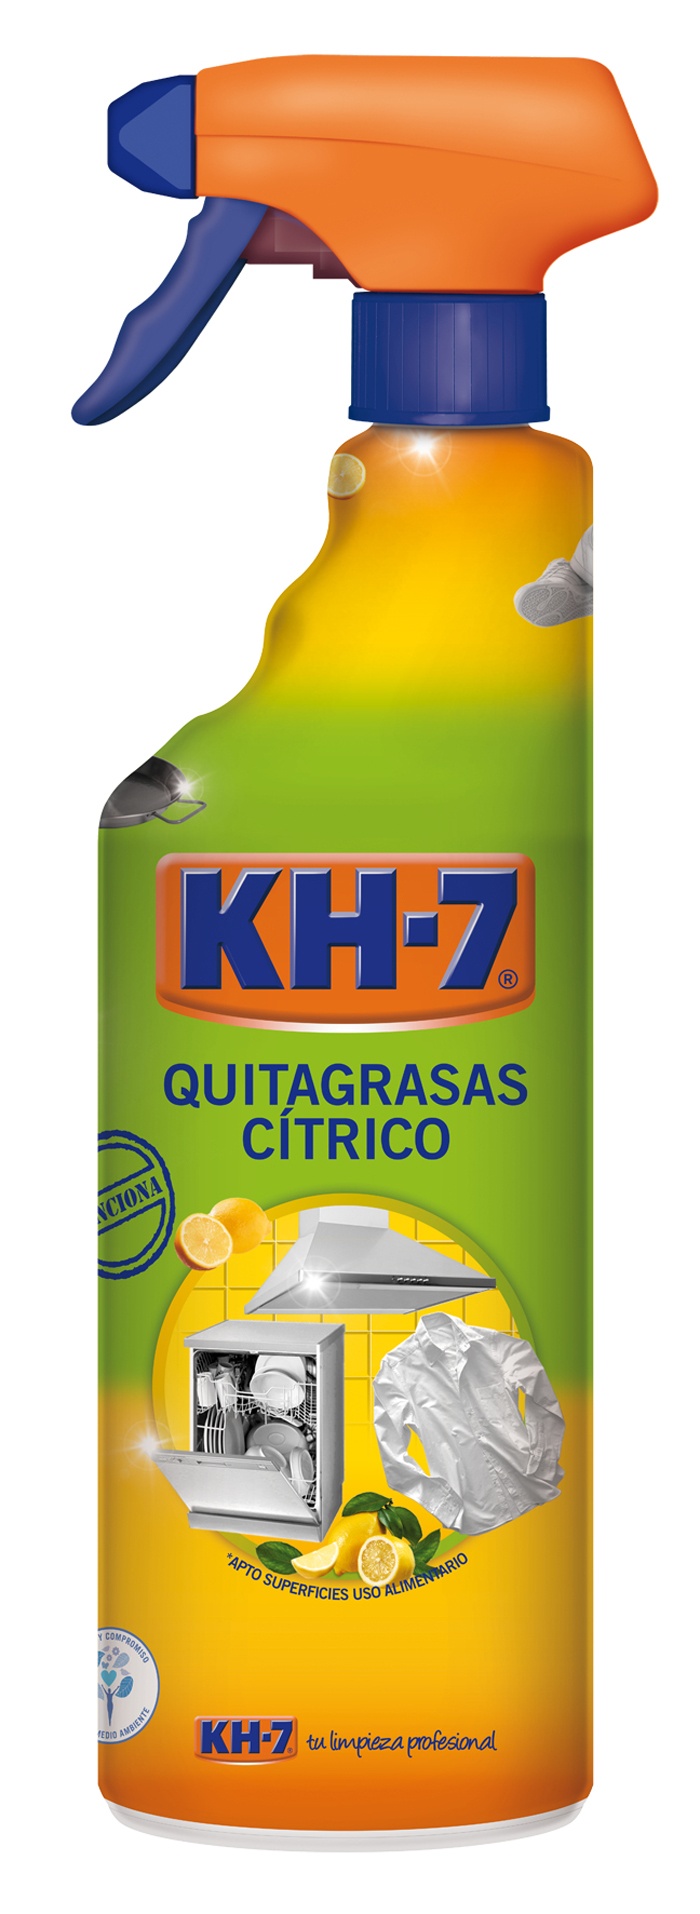 KH-7 renueva packaging e imagen para continuar impulsando la